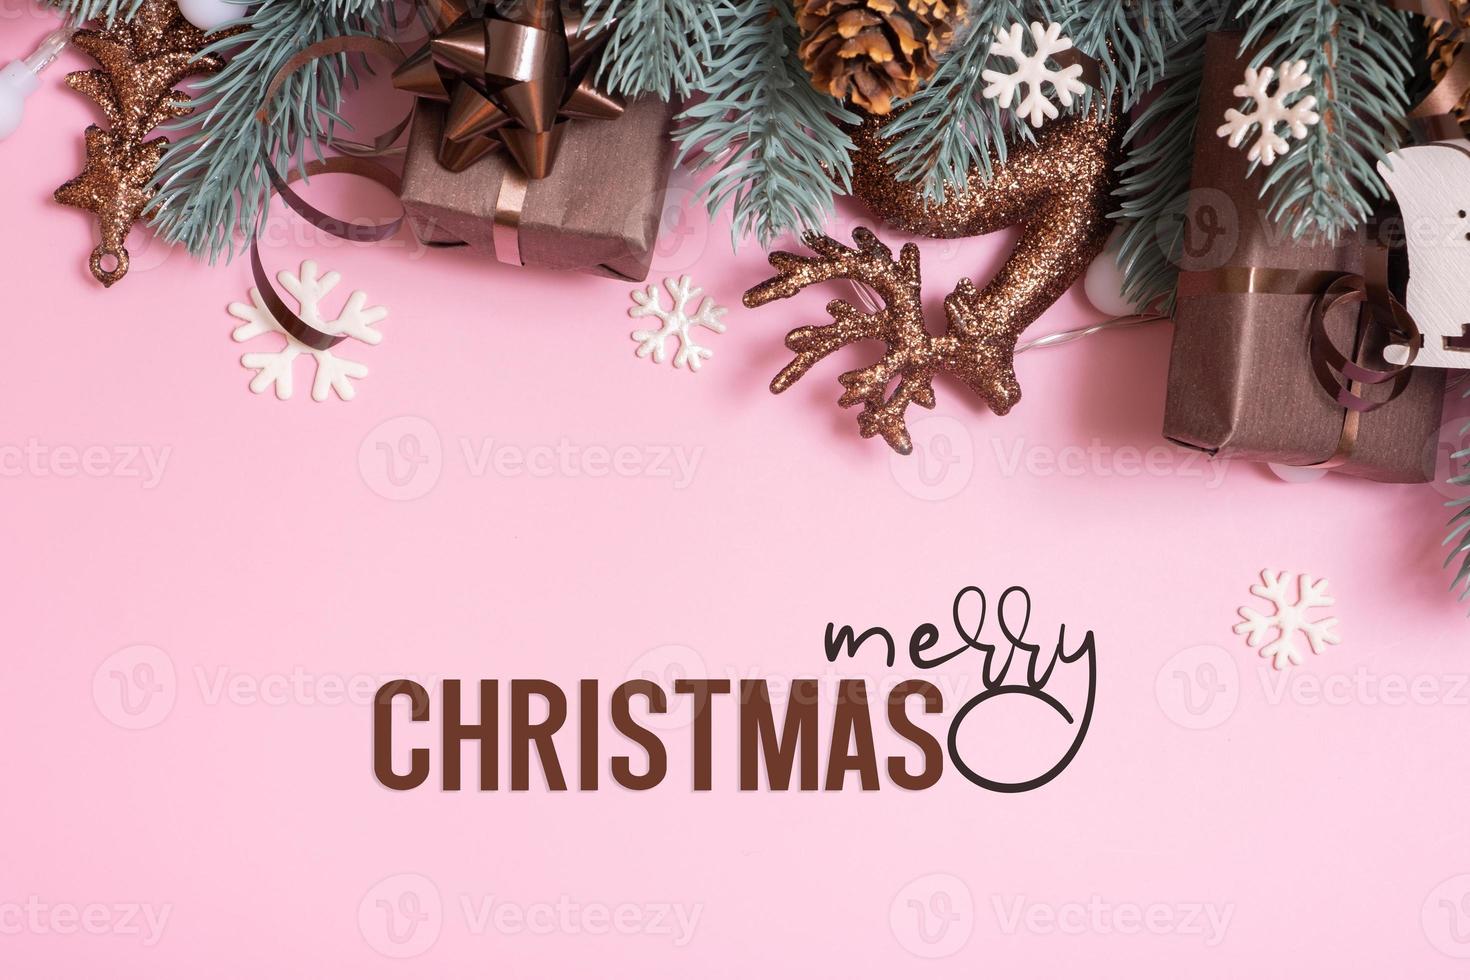 texto de saludo de feliz navidad y ramas de pinos con vista superior de decoración de año nuevo de navidad, plano sobre fondo rosa foto